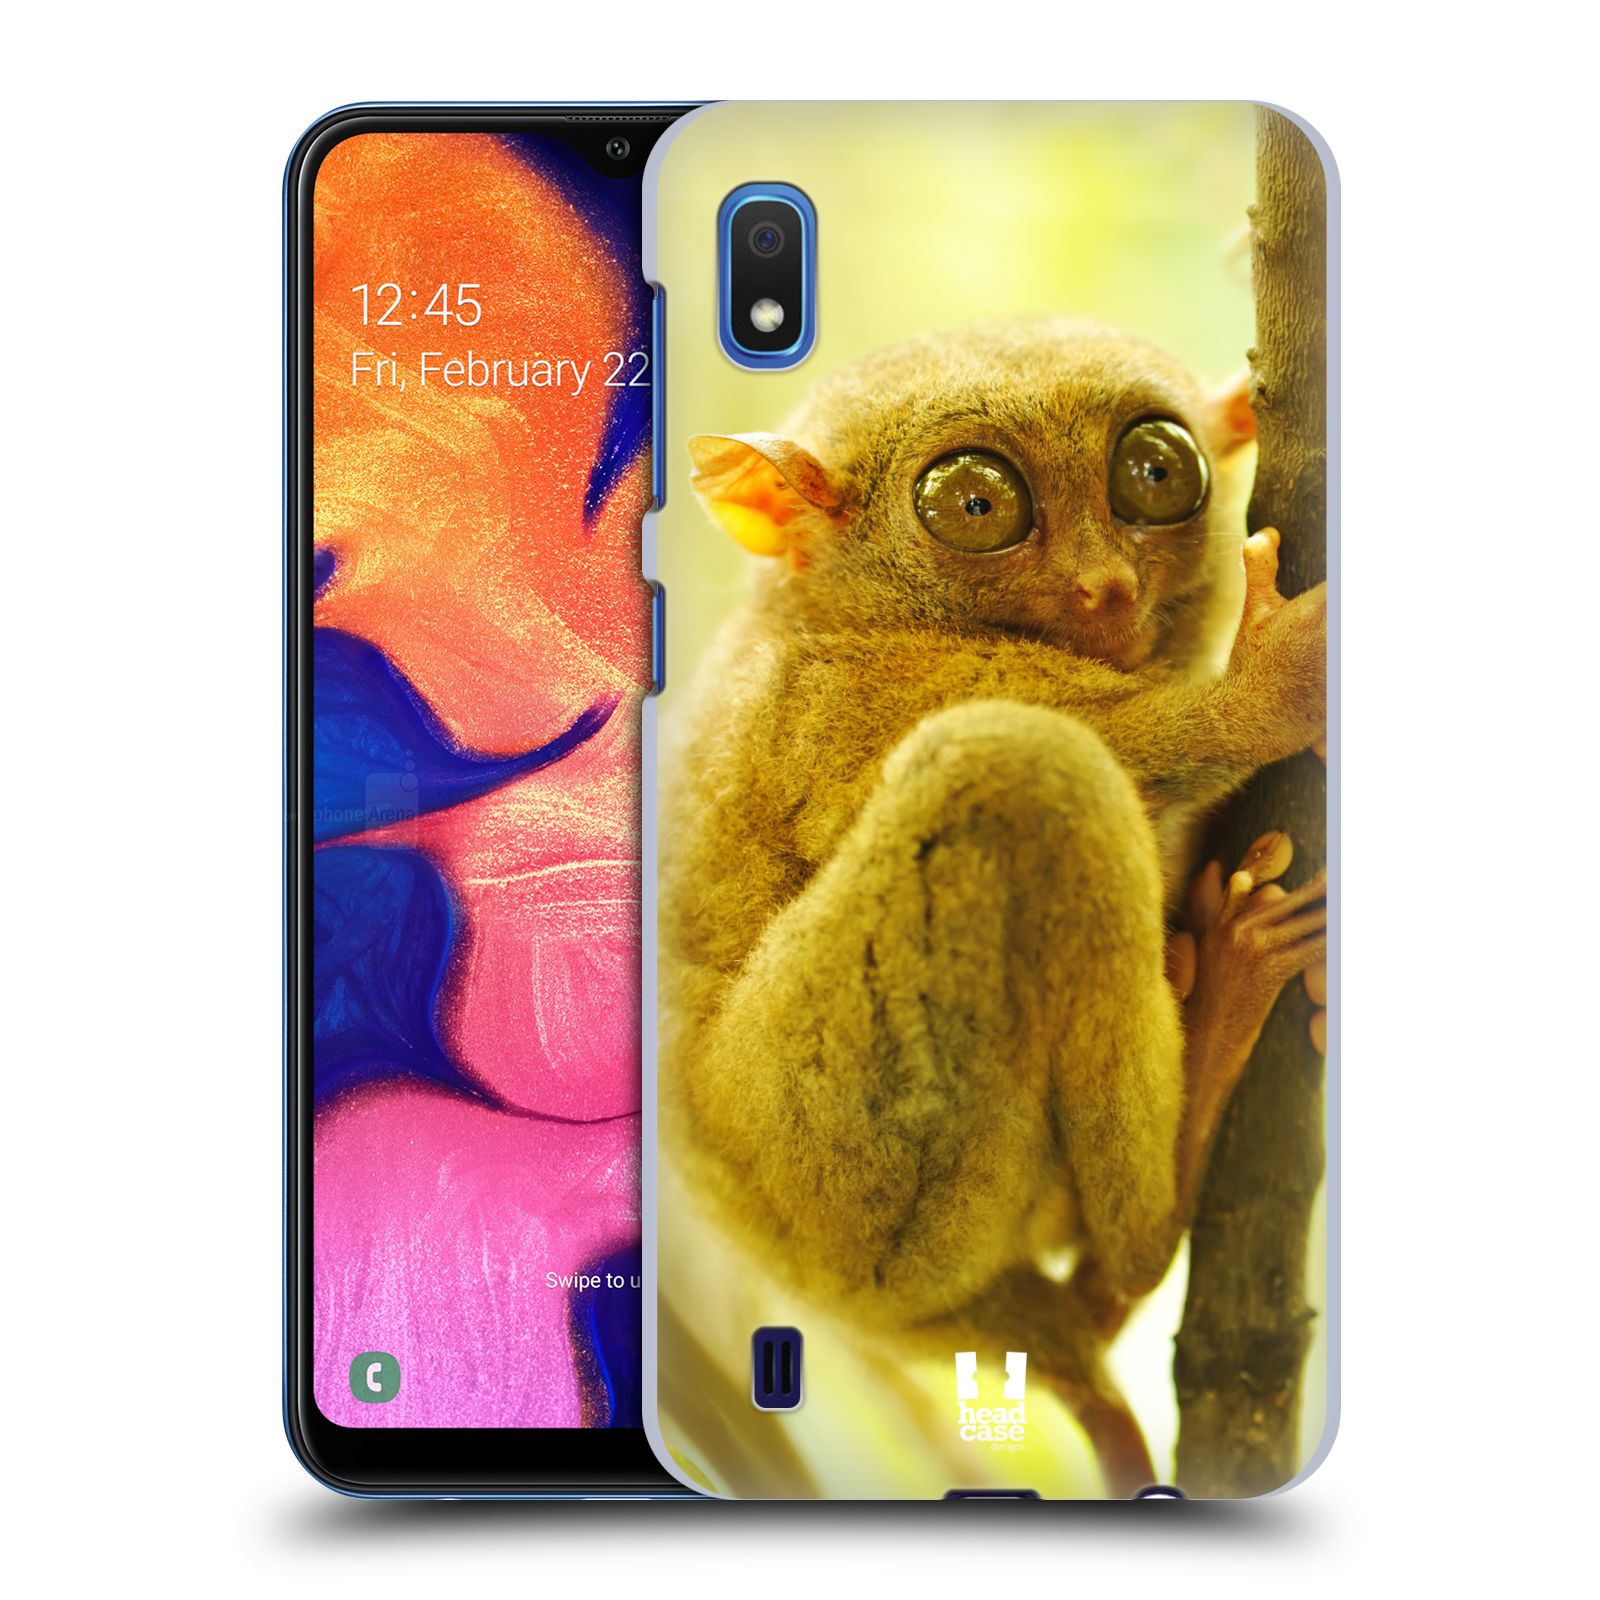 Pouzdro na mobil Samsung Galaxy A10 - HEAD CASE - vzor slavná zvířata foto Nártoun